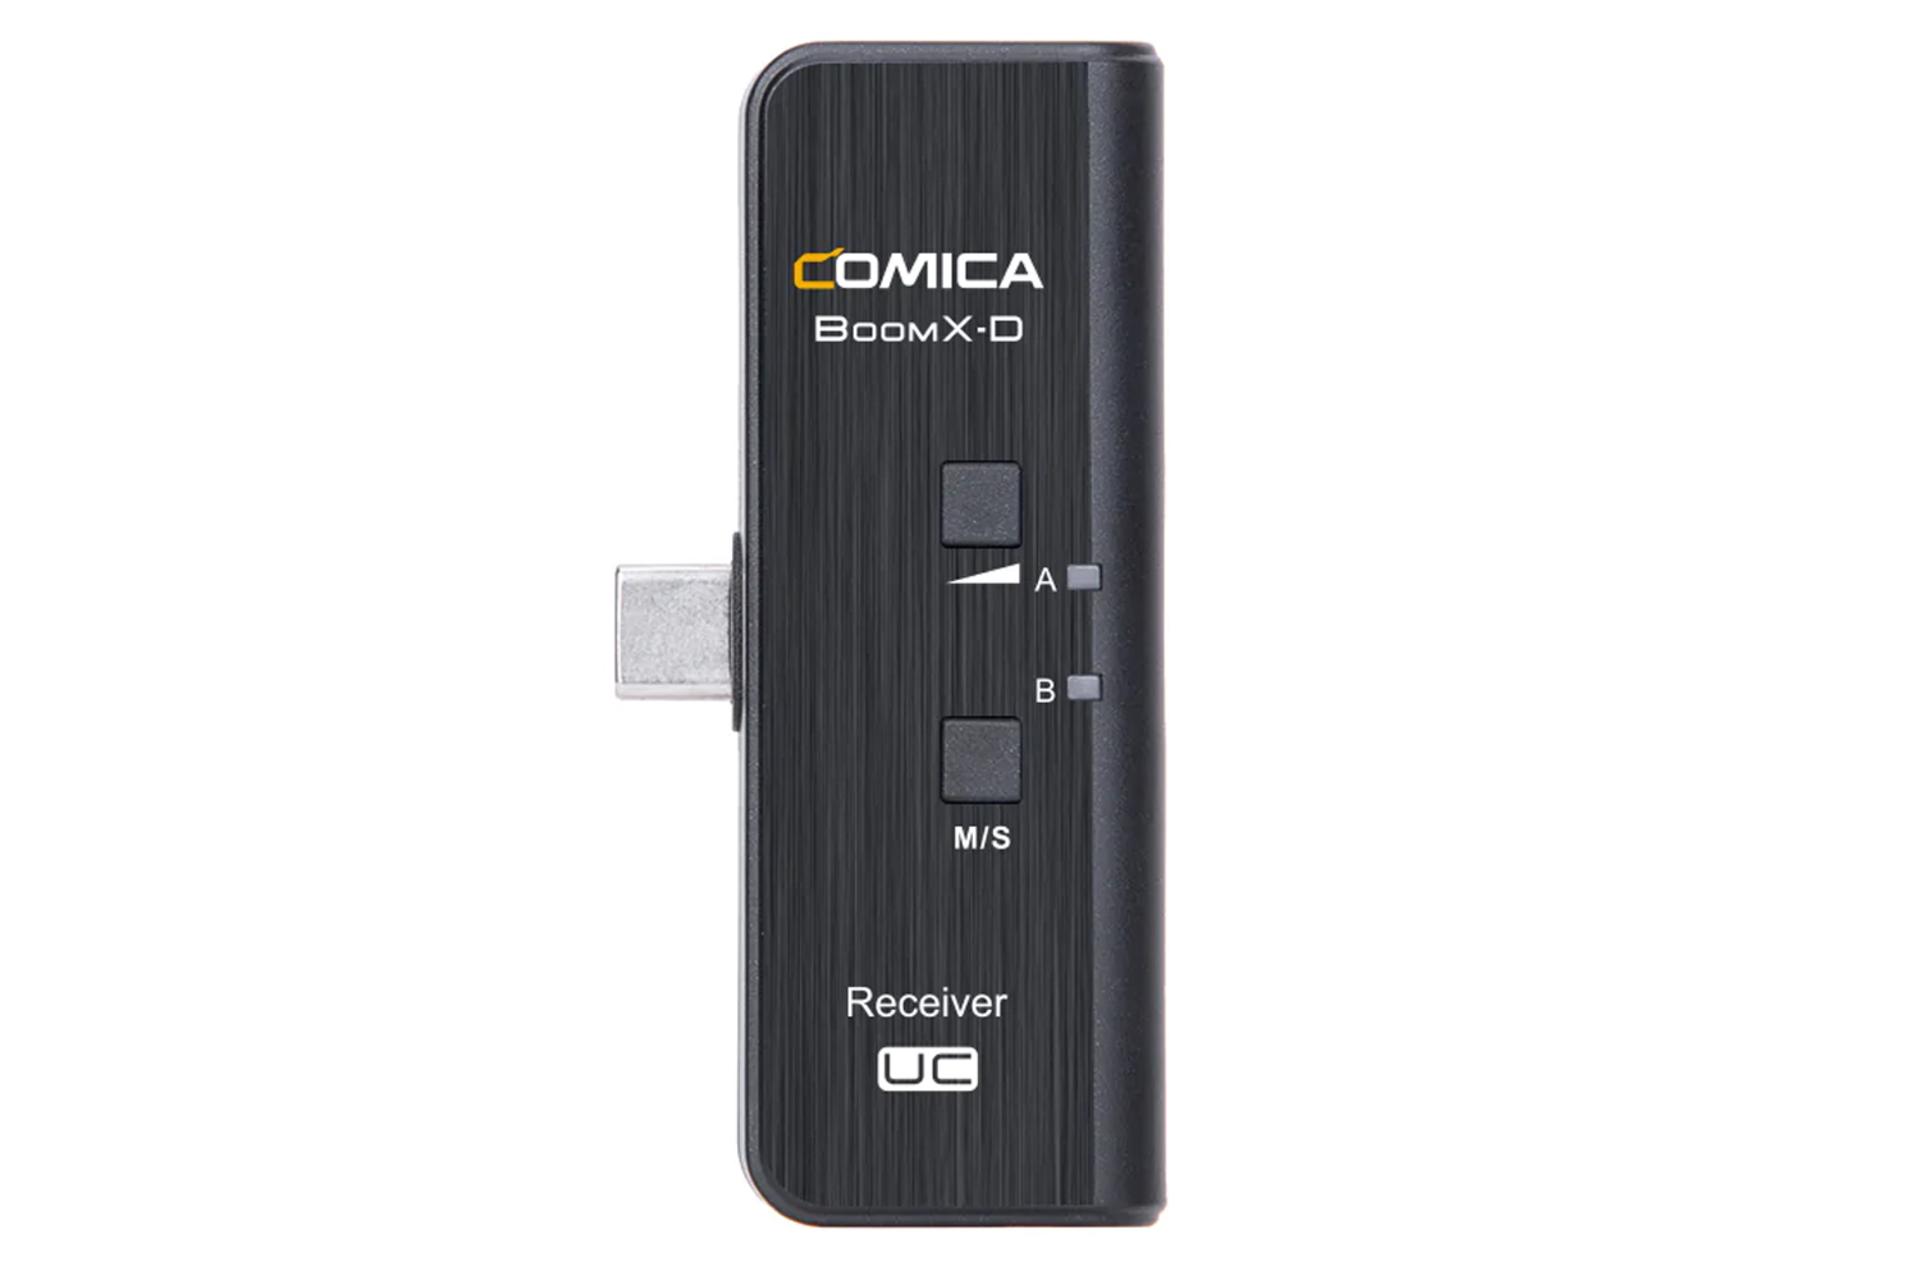 گیرنده میکروفون کامیکا CoMica BoomX-D UC1